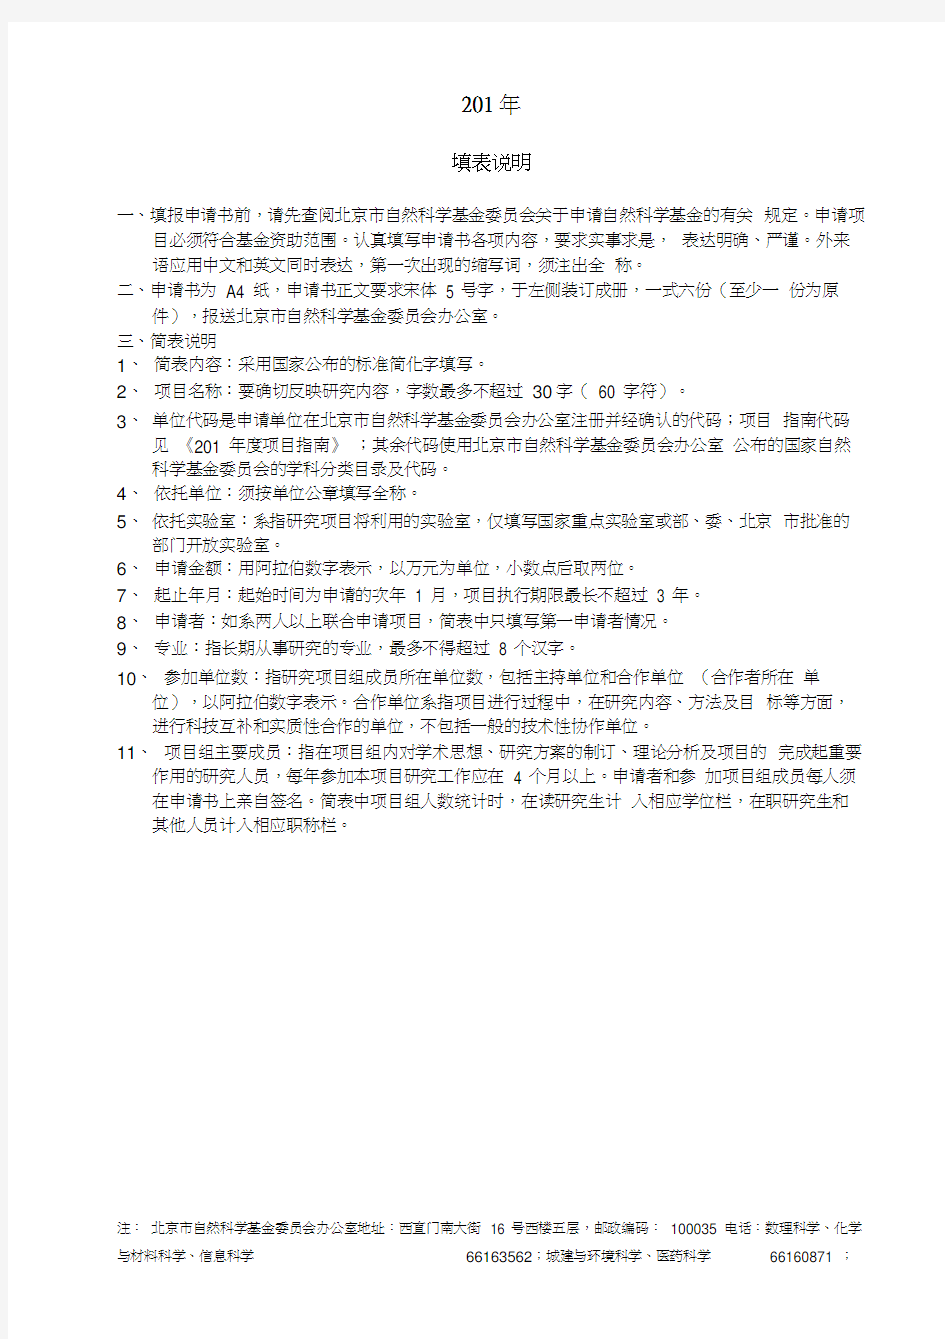 北京市自然科学基金申请书(面上项目)